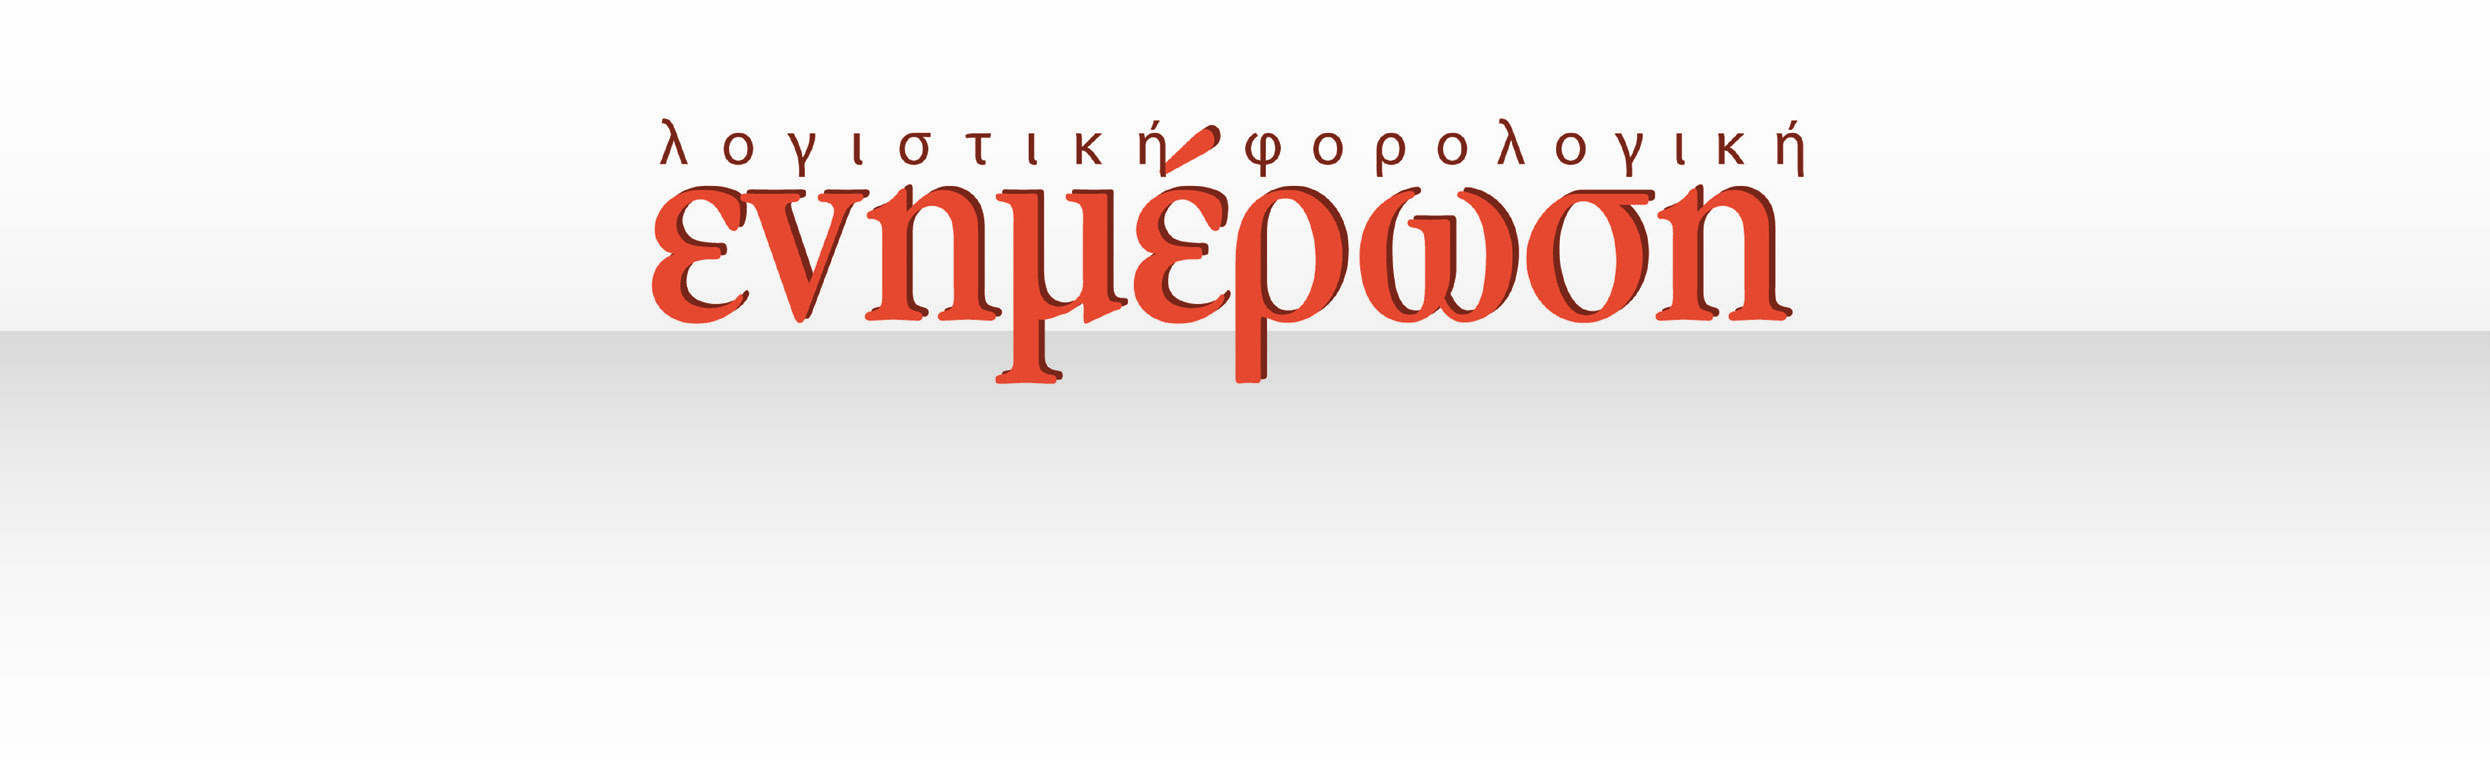 Επιλογή θεμάτων: Αντώνης Μουζάκης - Μέλος του Δ.Σ. της Π.Ο.Φ.Ε.Ε. Πανελλήνια Ομοσπονδία Φοροτεχνικών Ελευθέρων Επαγγελματιών Περιοδική Ενημερωτική Έκδοση σε Λογιστικά & Φοροτεχνικά θέματα Αριθμός Φύλλου 229 19 Ιουνίου 2015 Ιουλιανού 42-46, 10 434, Αθήνα Τηλ.